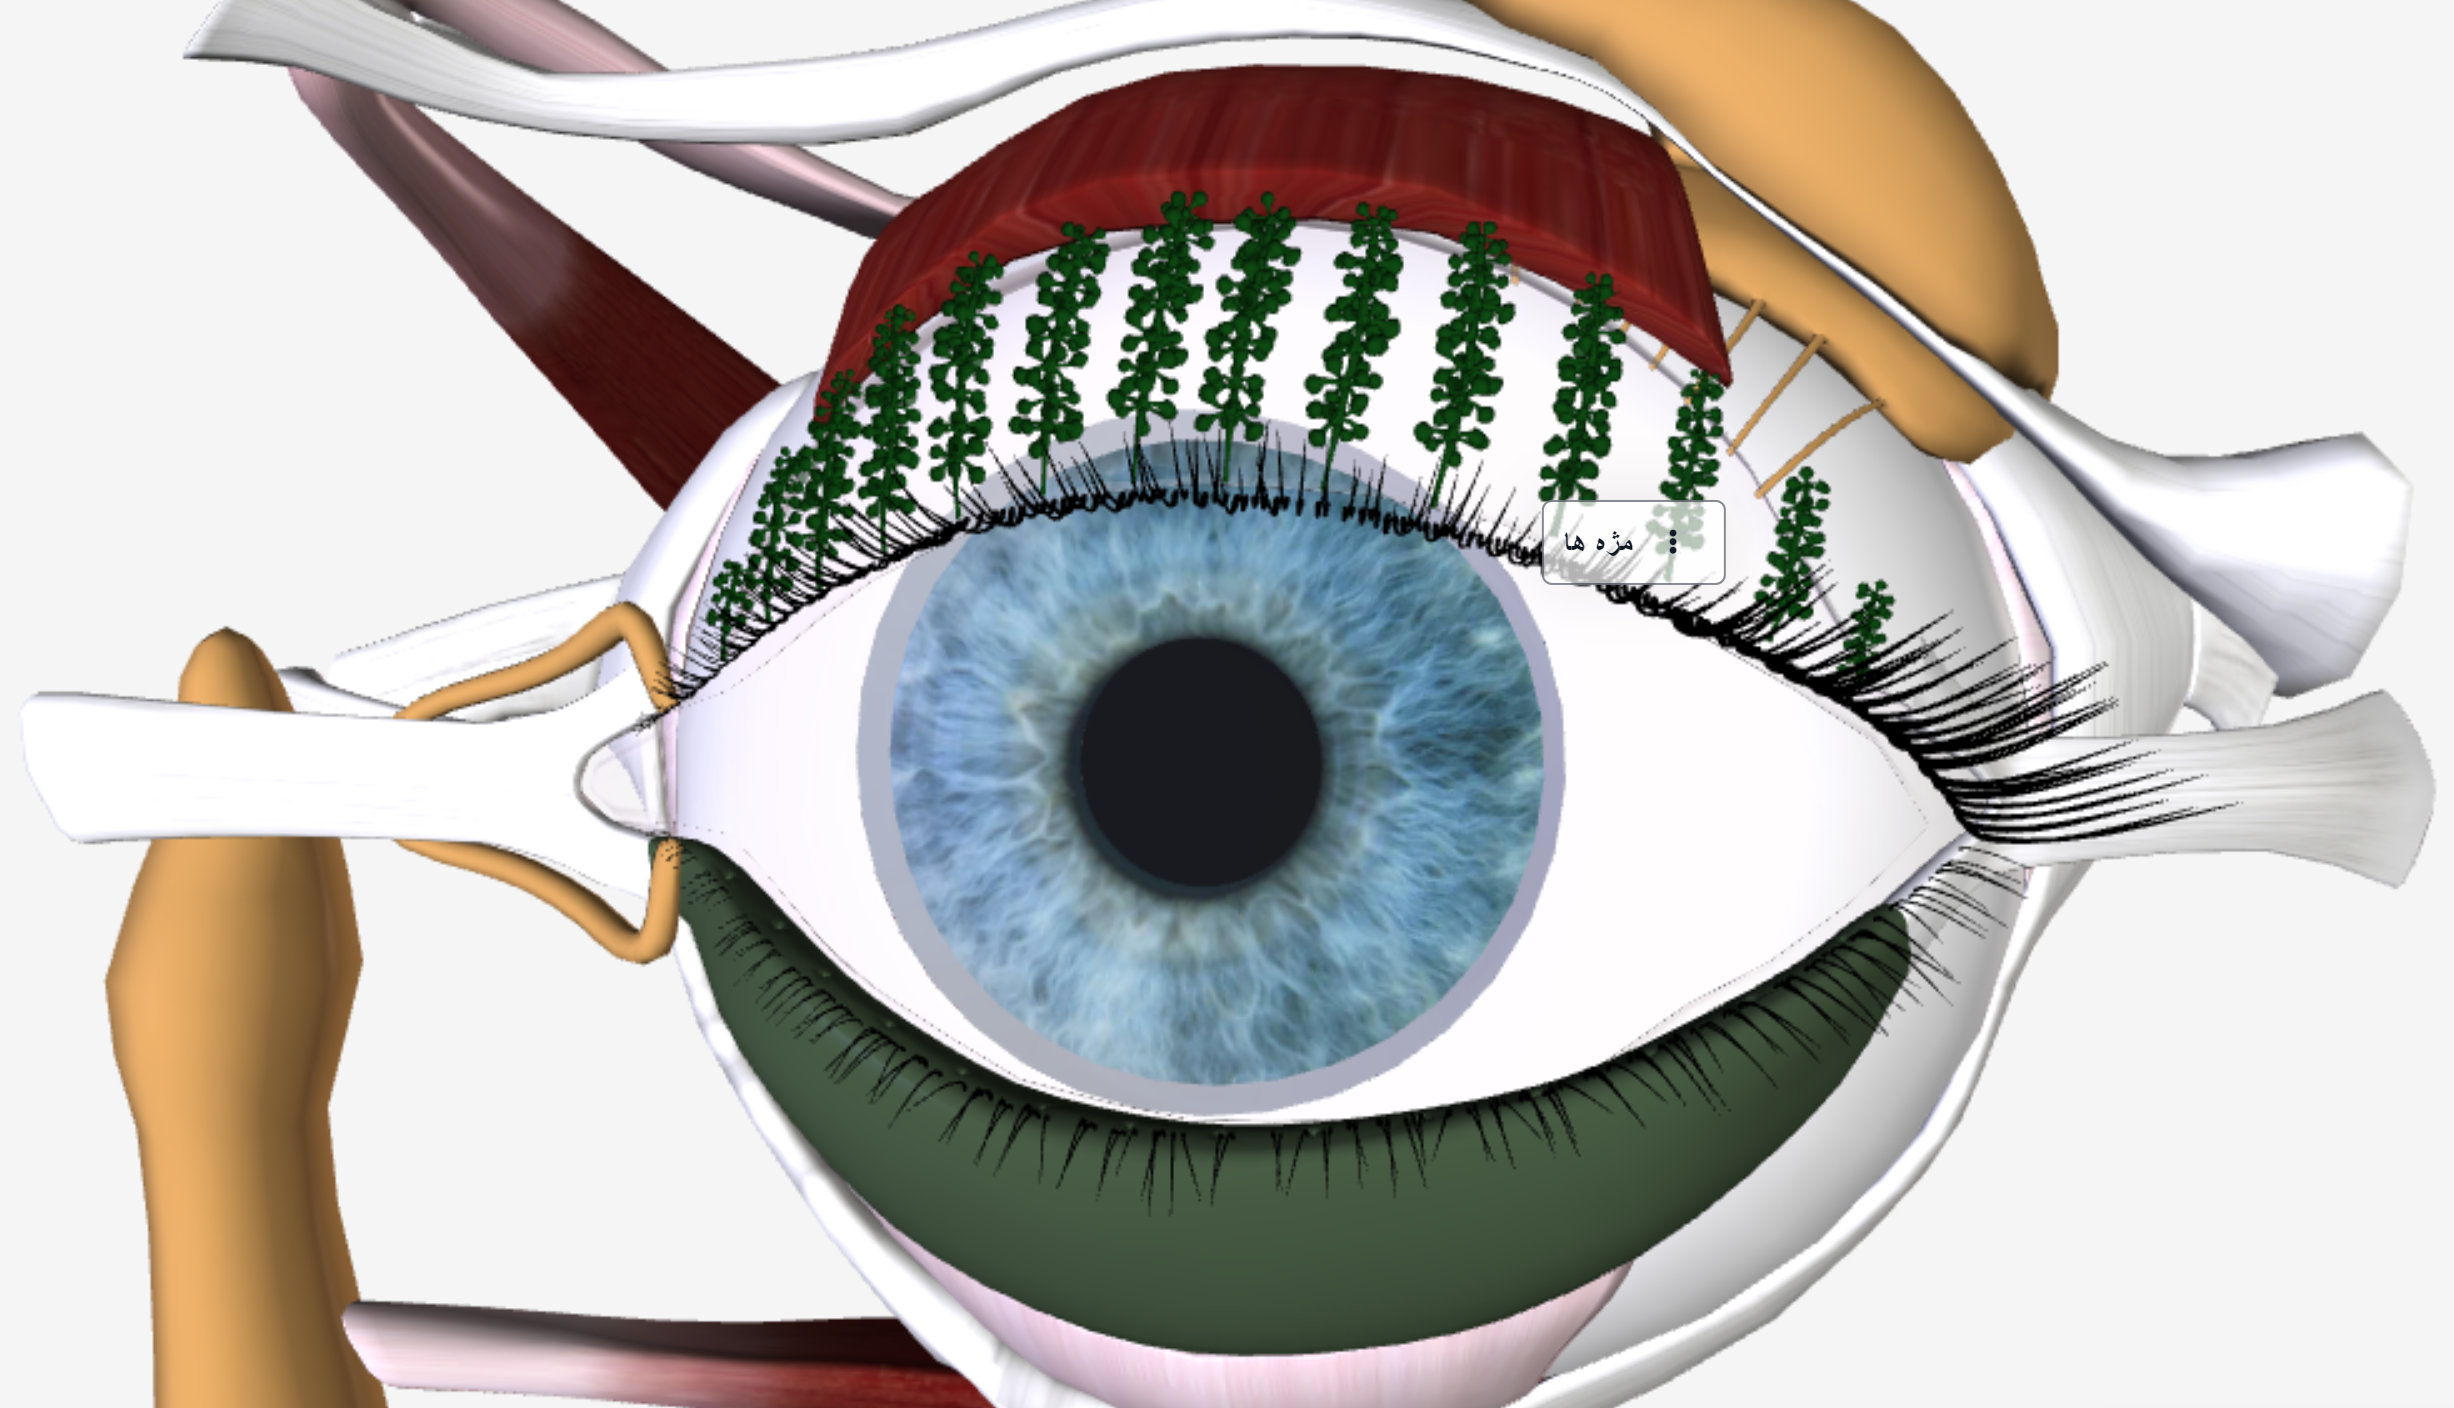 آناتومی چشم انسان – ویدئوی واضح سازی